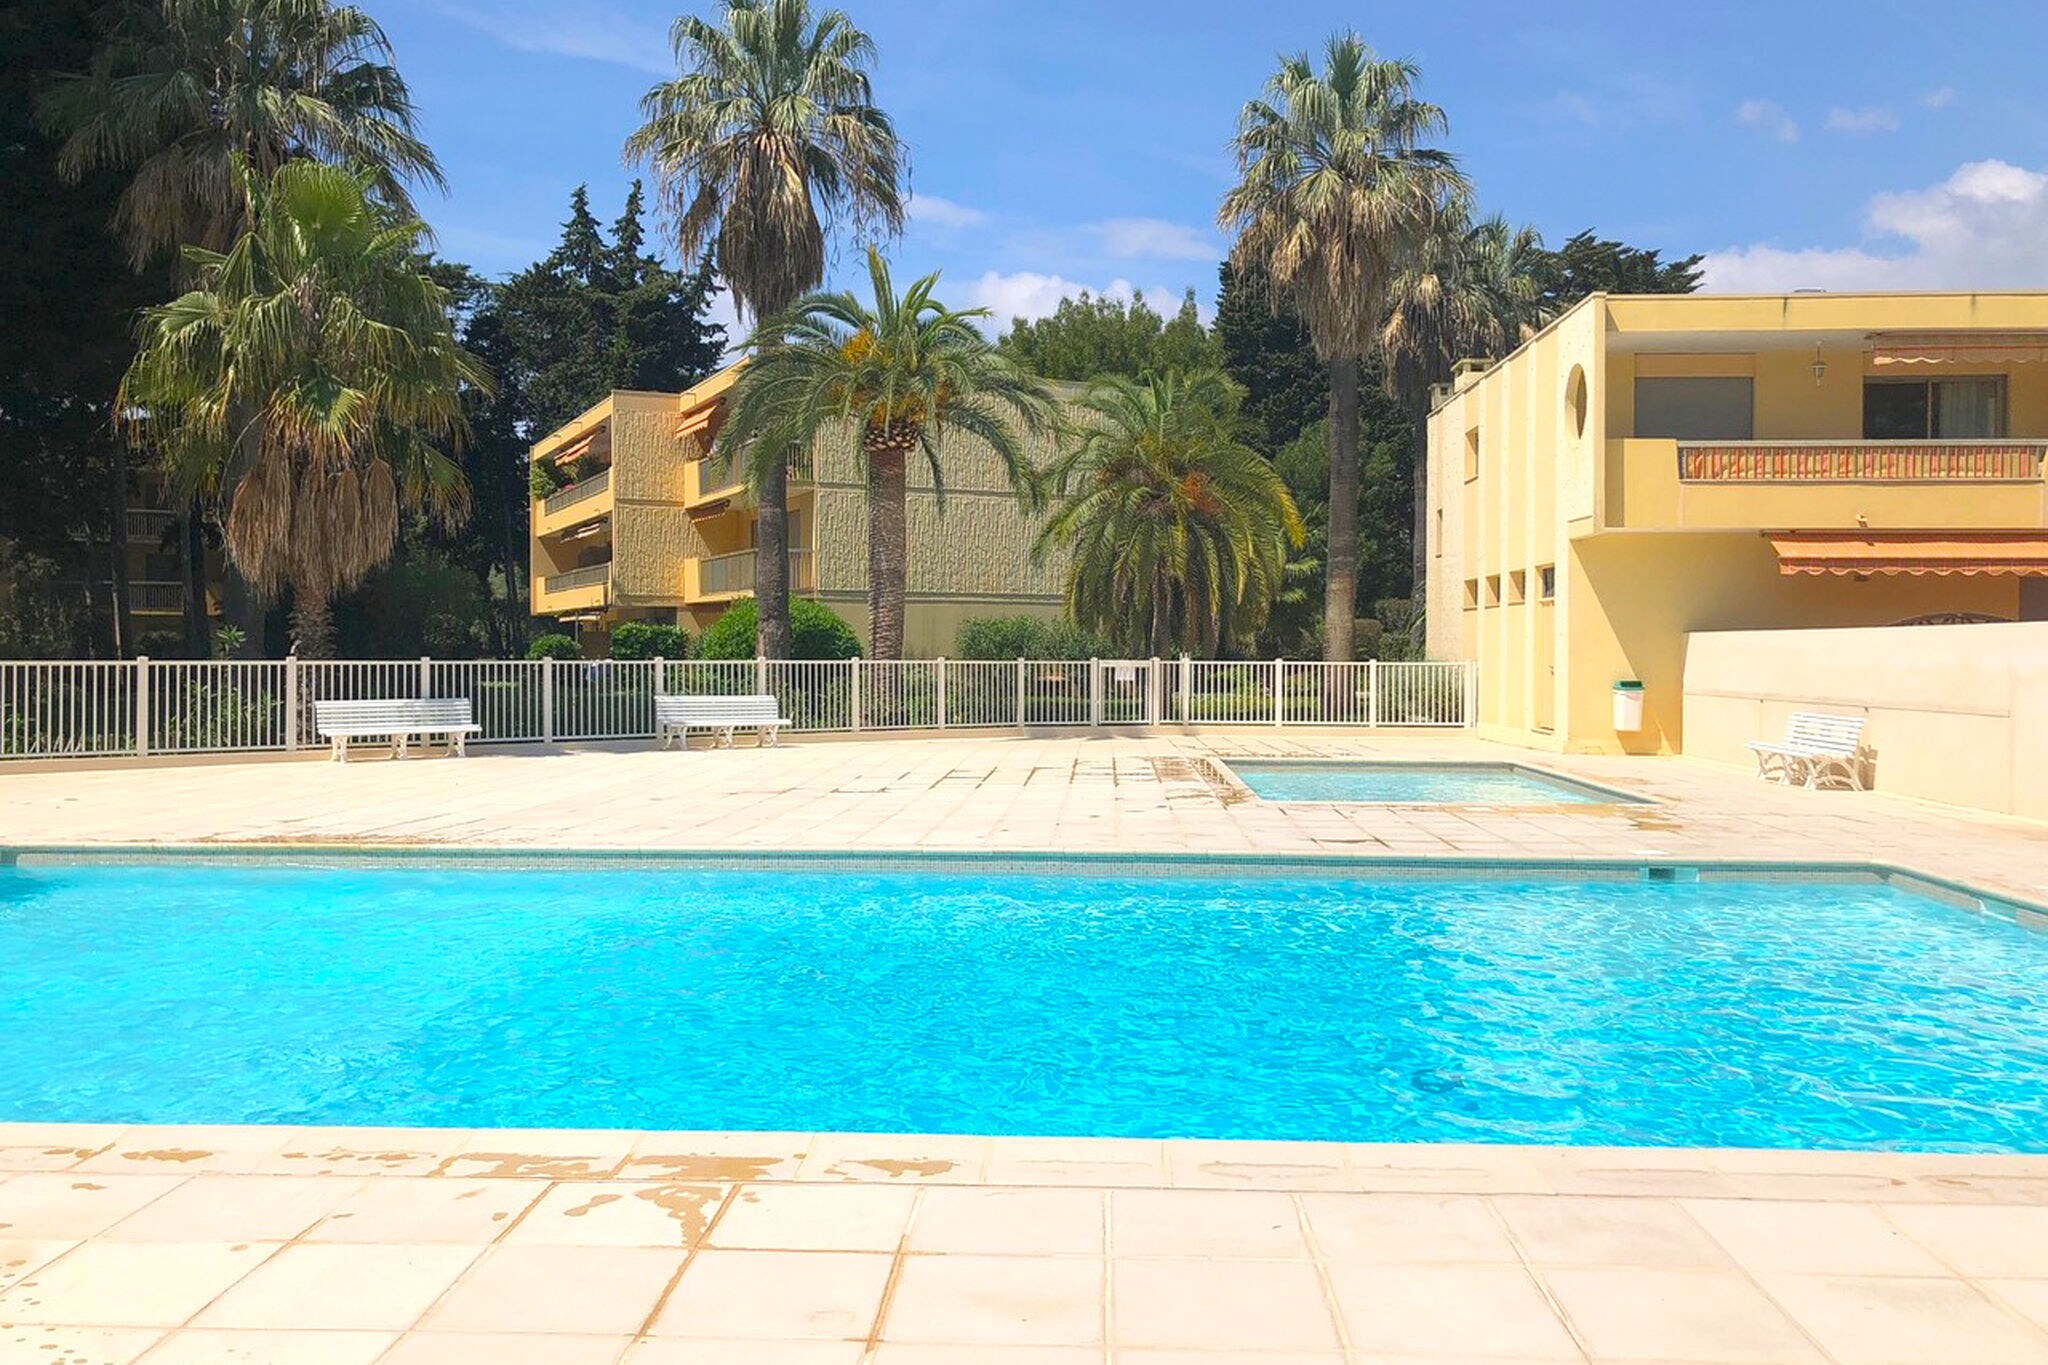 Appartement moderne dans le sud de la France, grande piscine